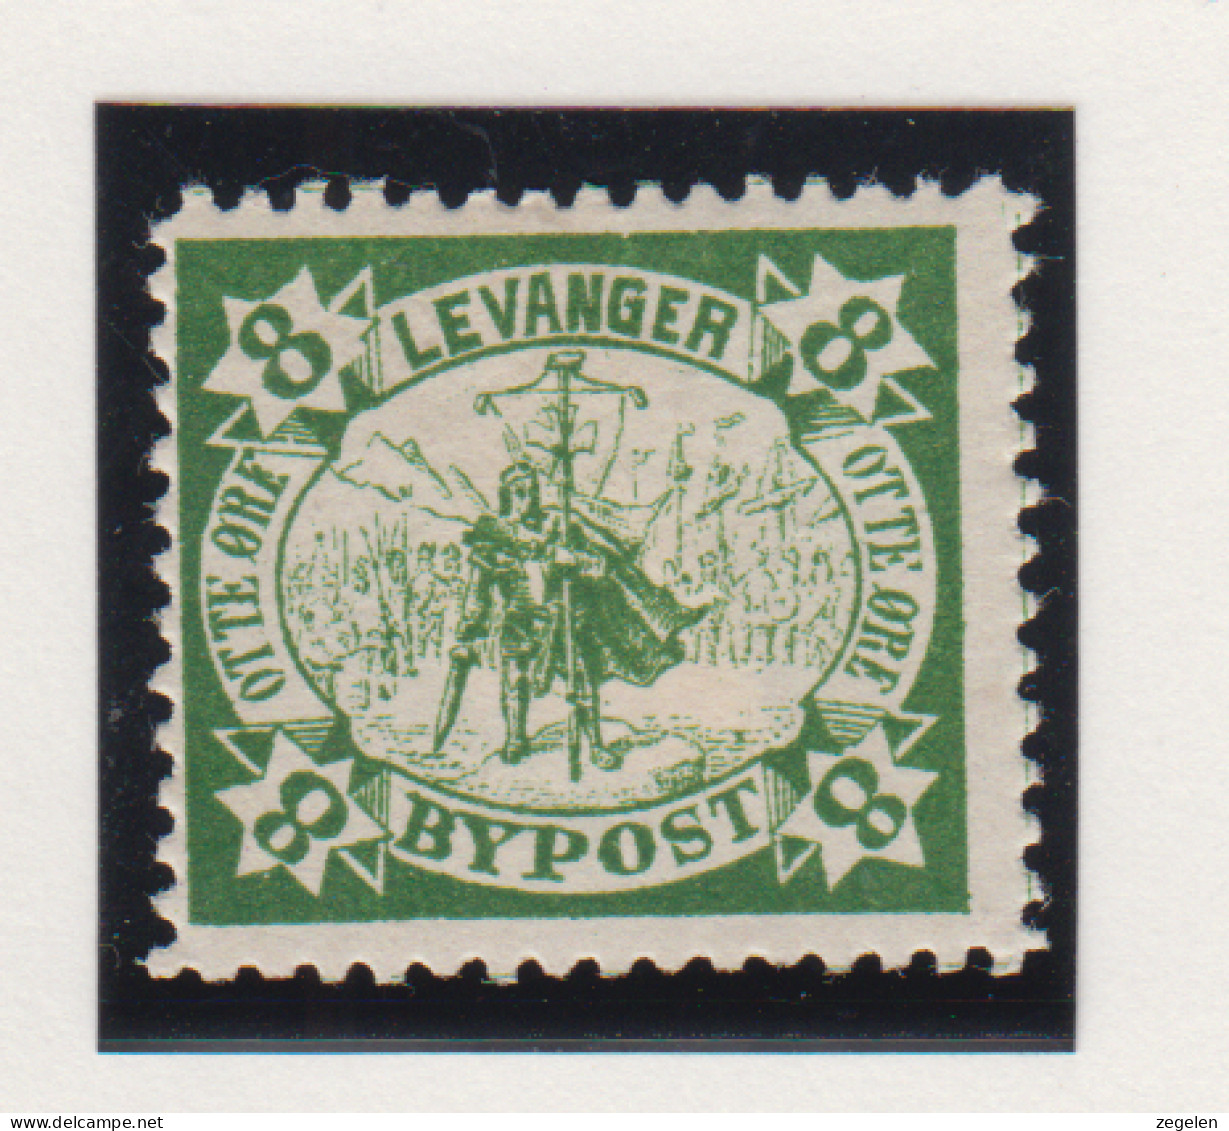 Noorwegen Lokale Zegel   Katalog Over Norges Byposter Levanger Bypost 3 - Local Post Stamps